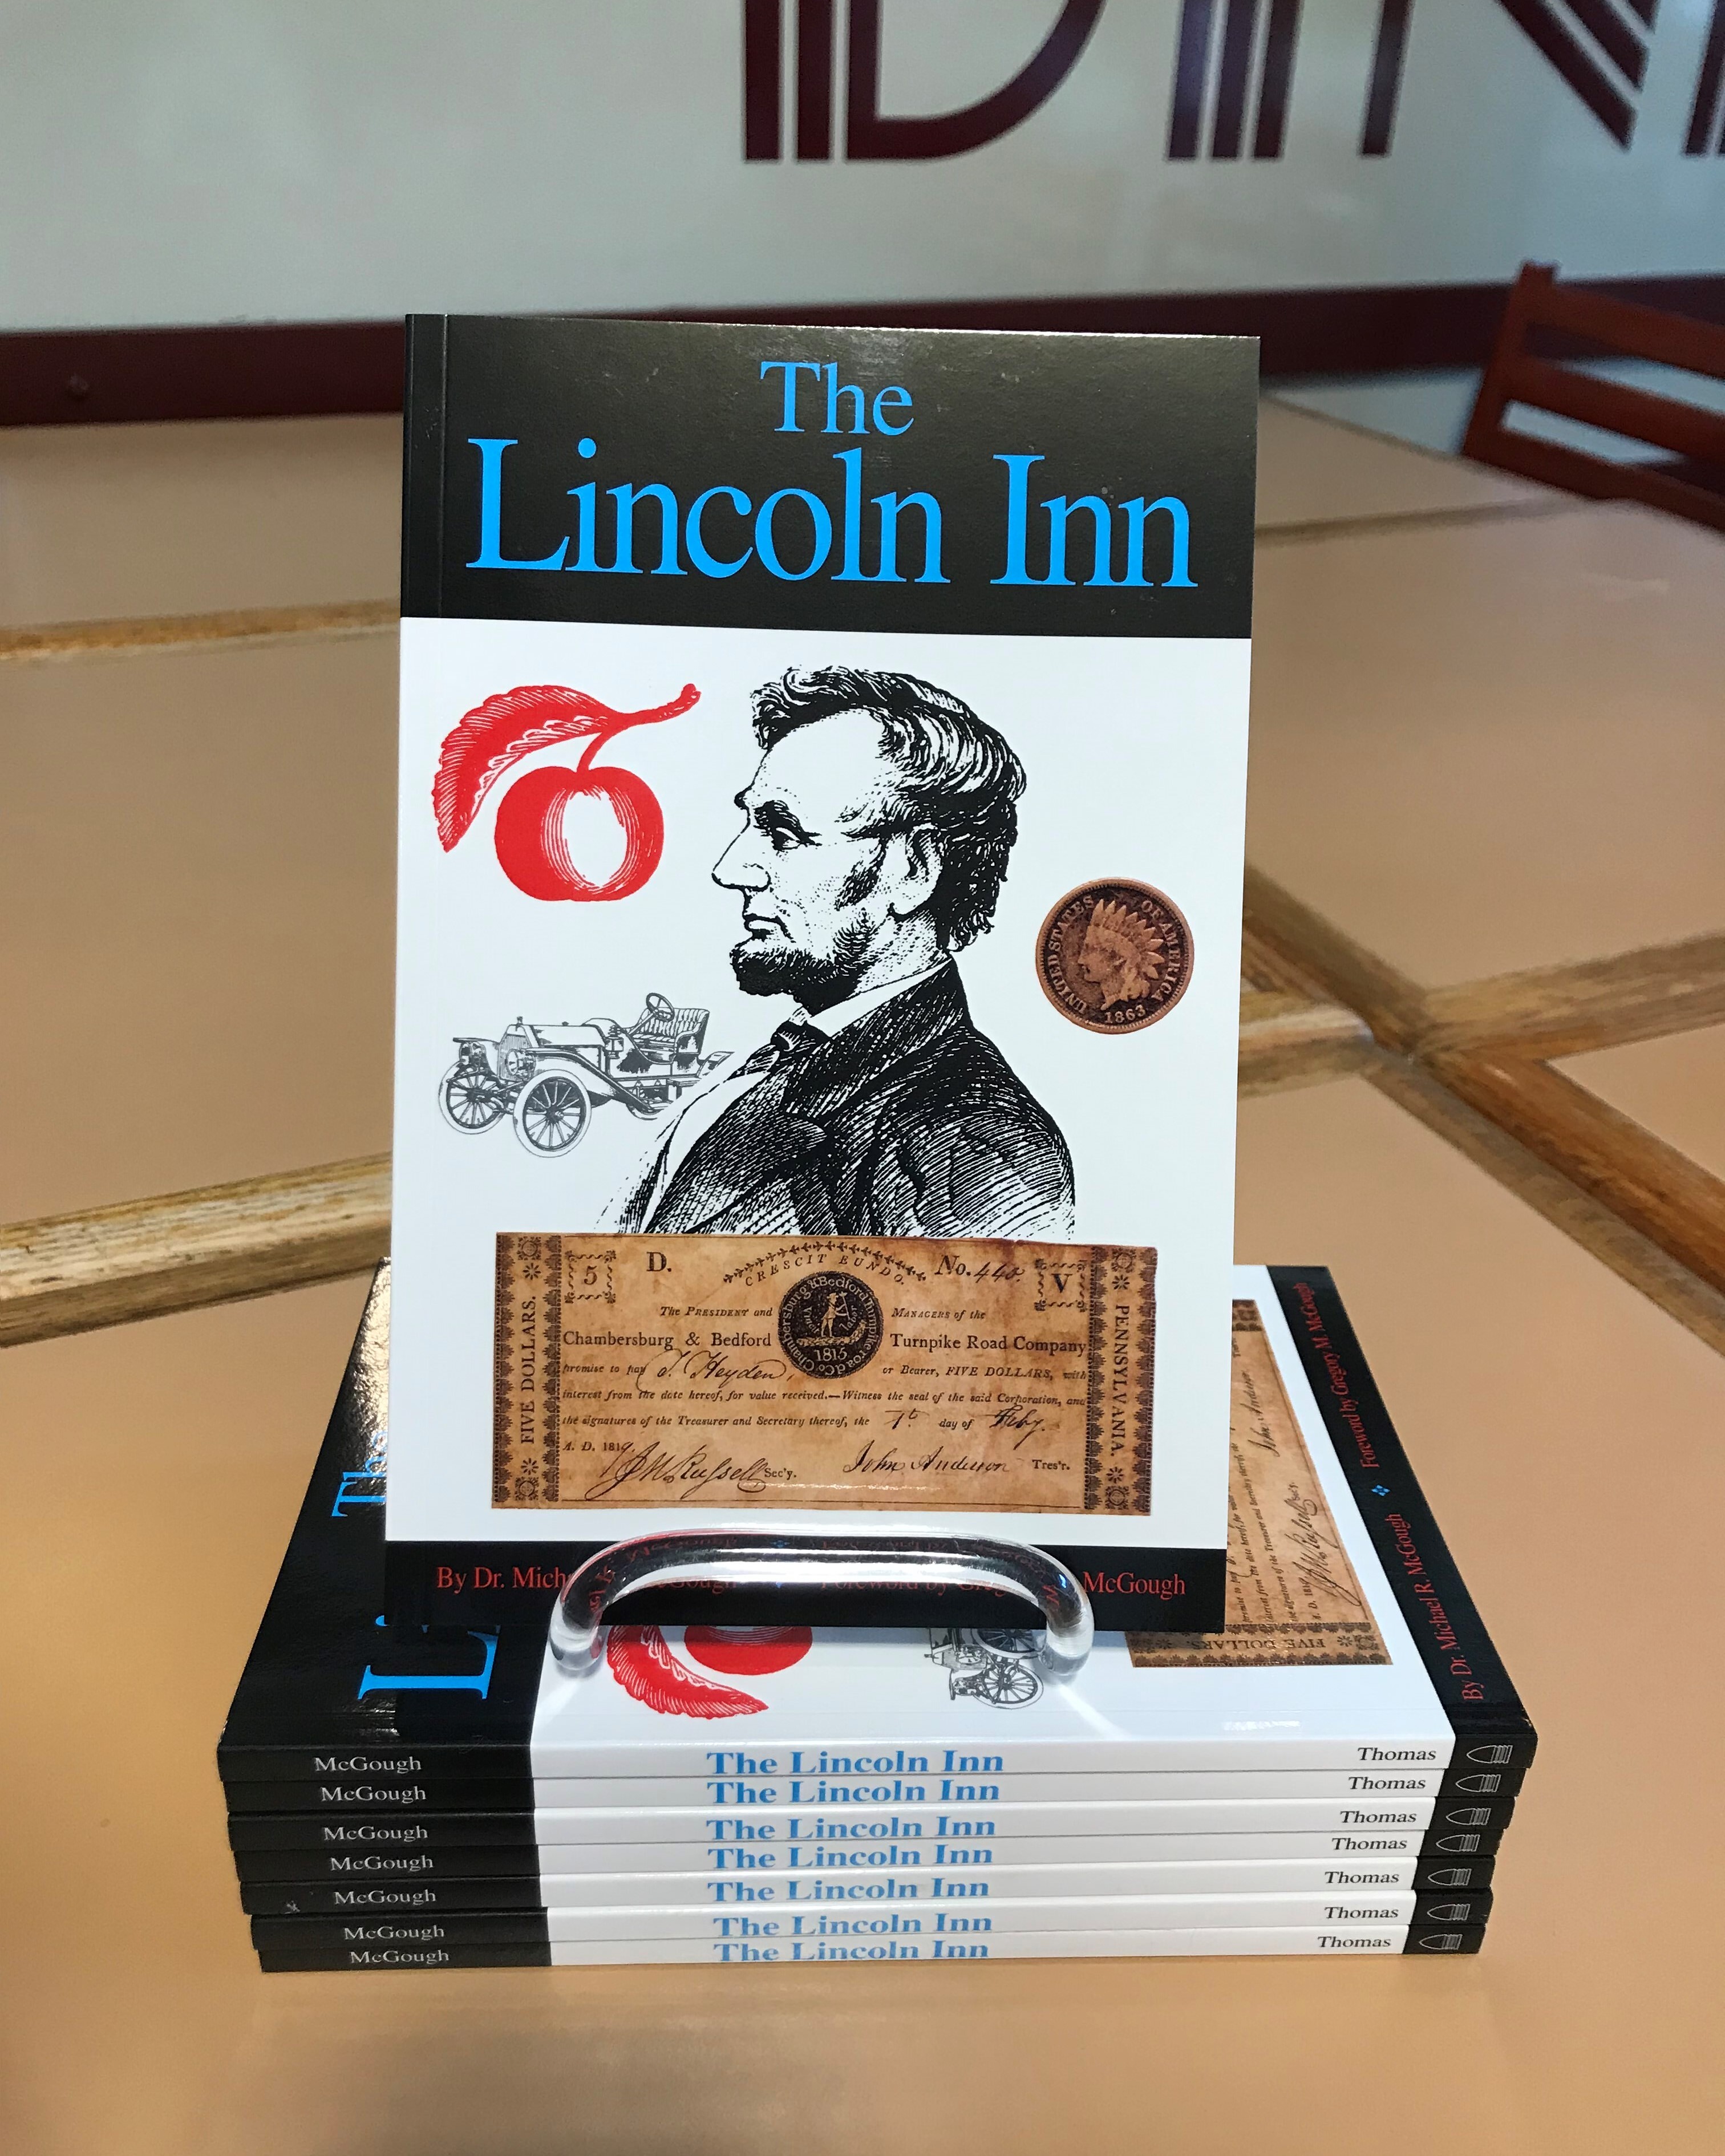 The Lincoln Inn